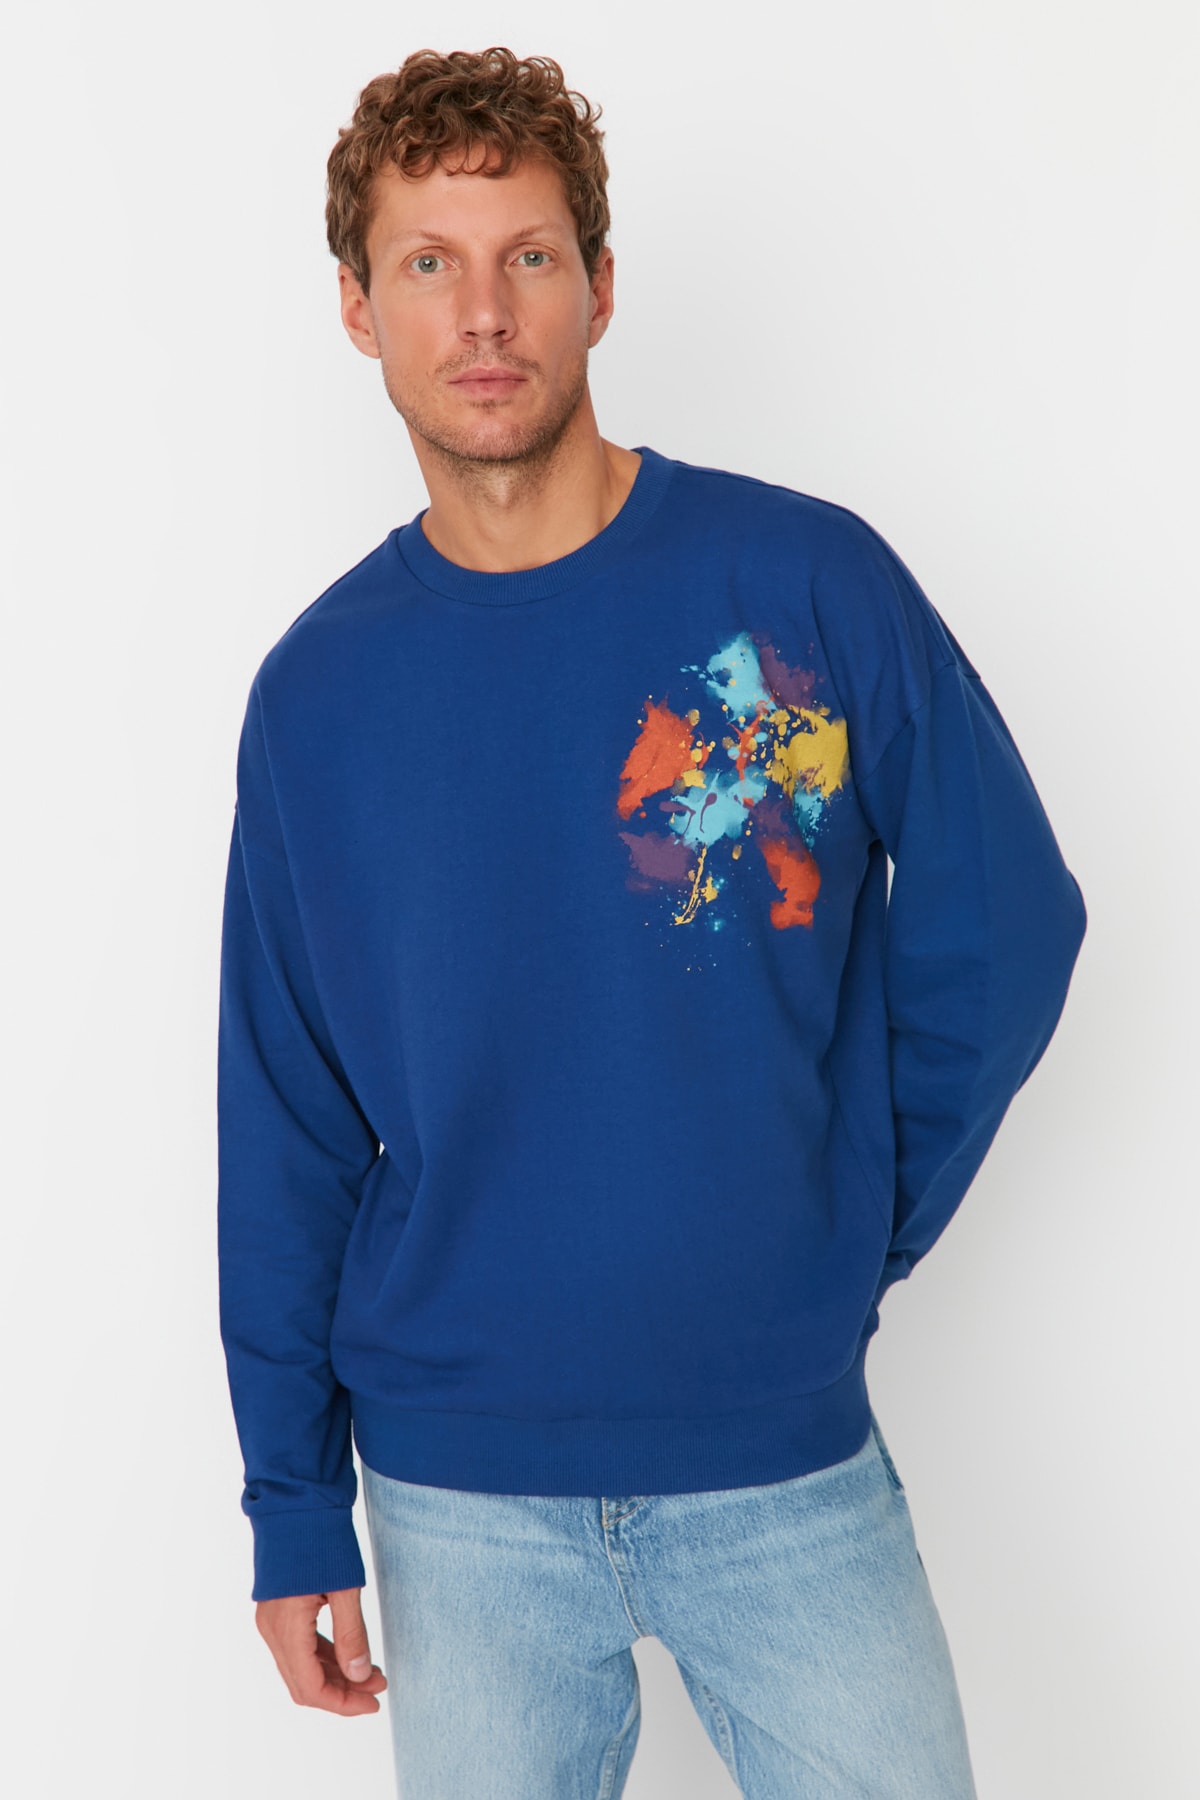 Trendyol Men's Navy Blue Oversize/Wide-Fit Crew Neck Geometric Printed Sweatshirt